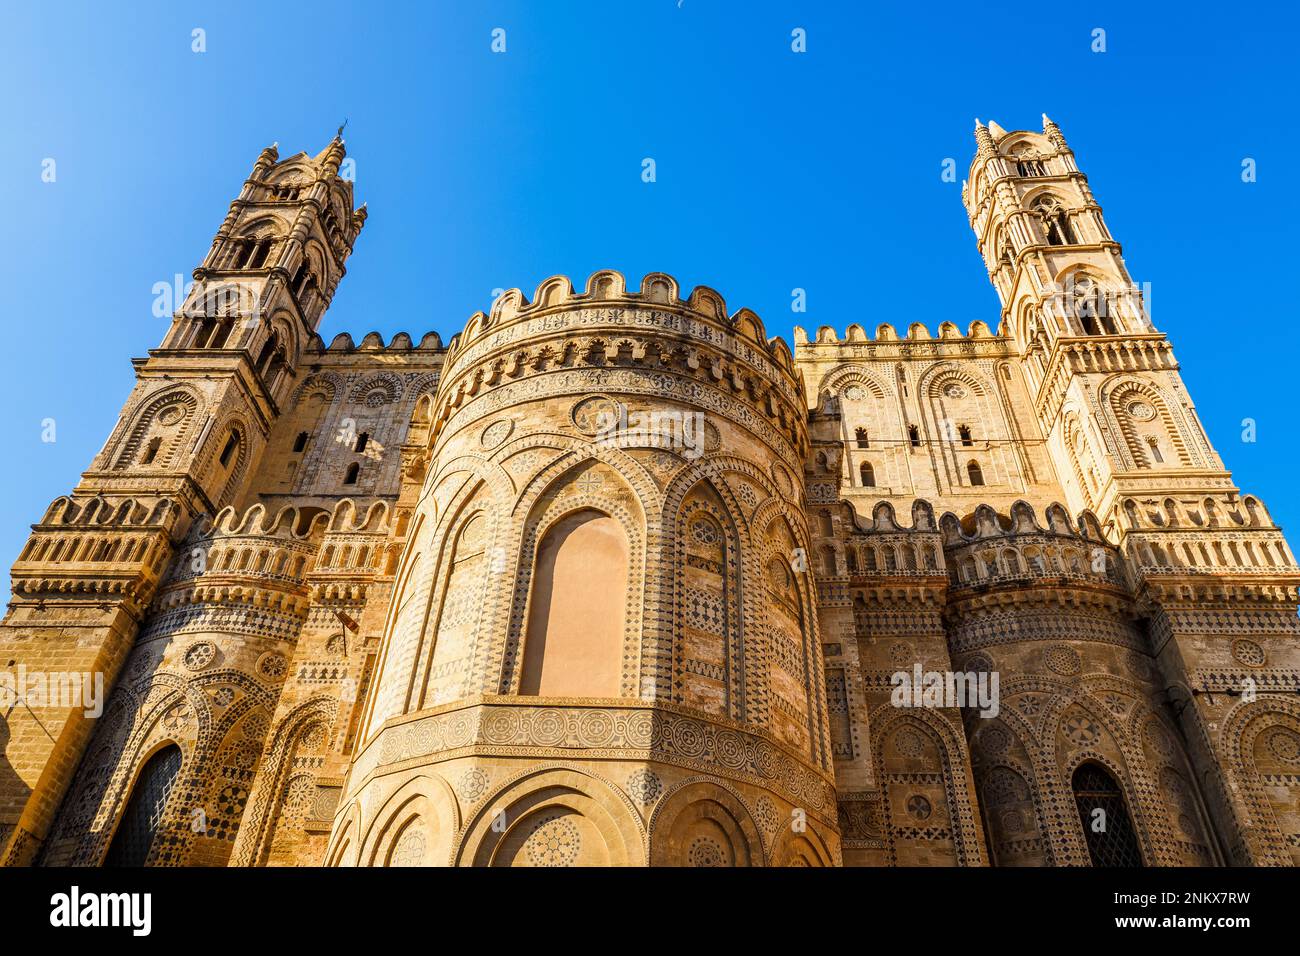 La façade ne de la cathédrale de Palerme - Sicile, Italie Banque D'Images